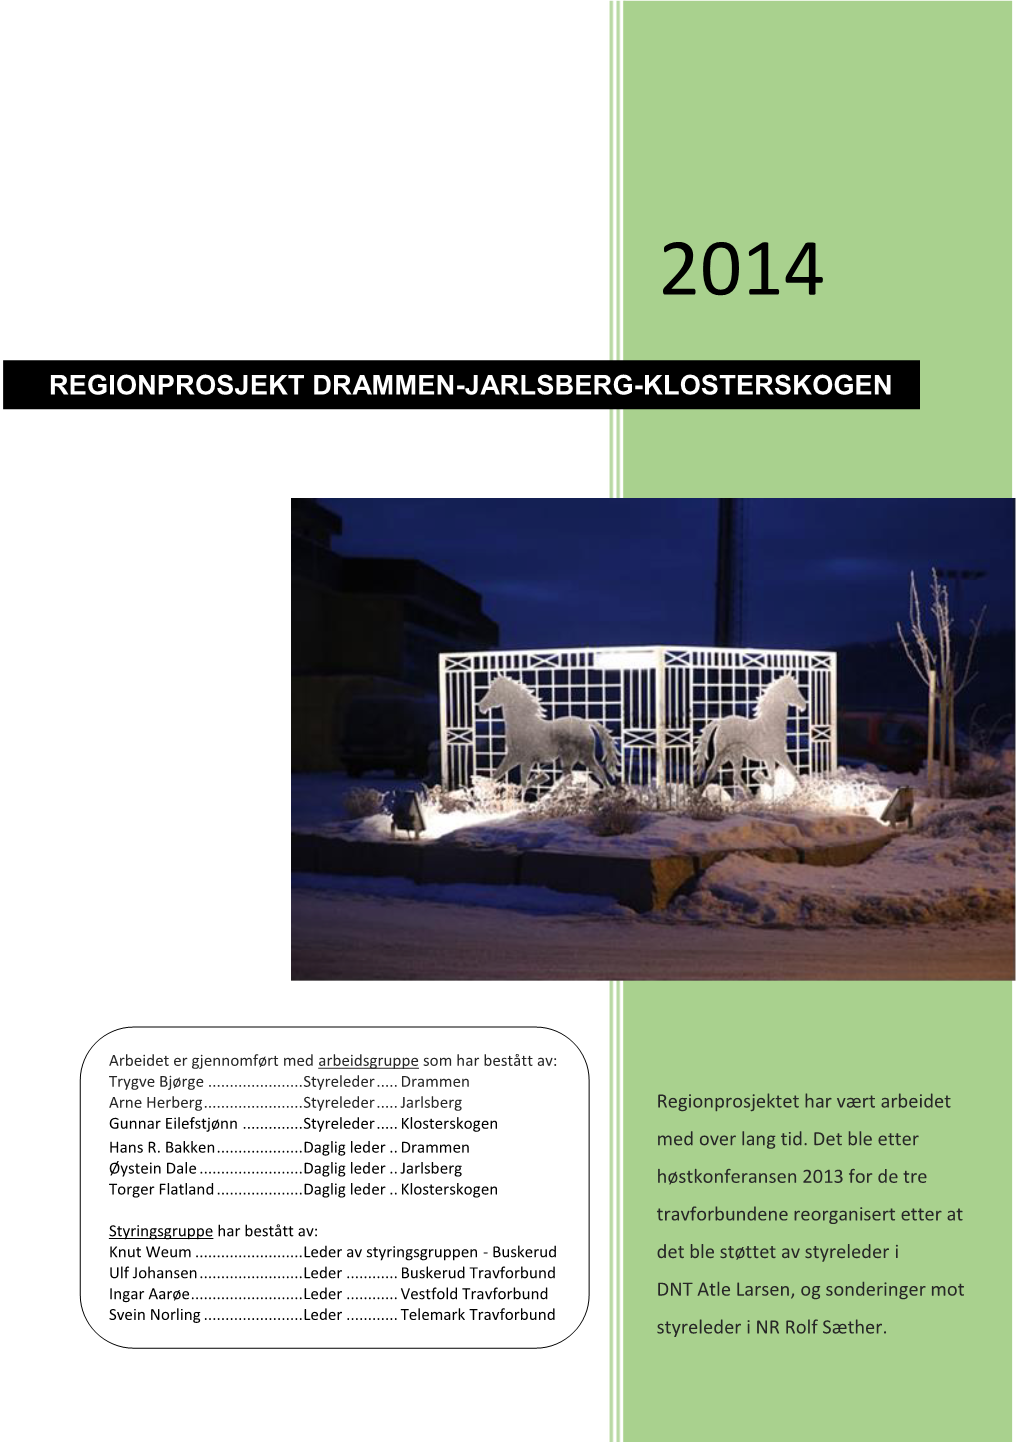 Regionprosjekt Drammen-Jarlsberg-Klosterskogen